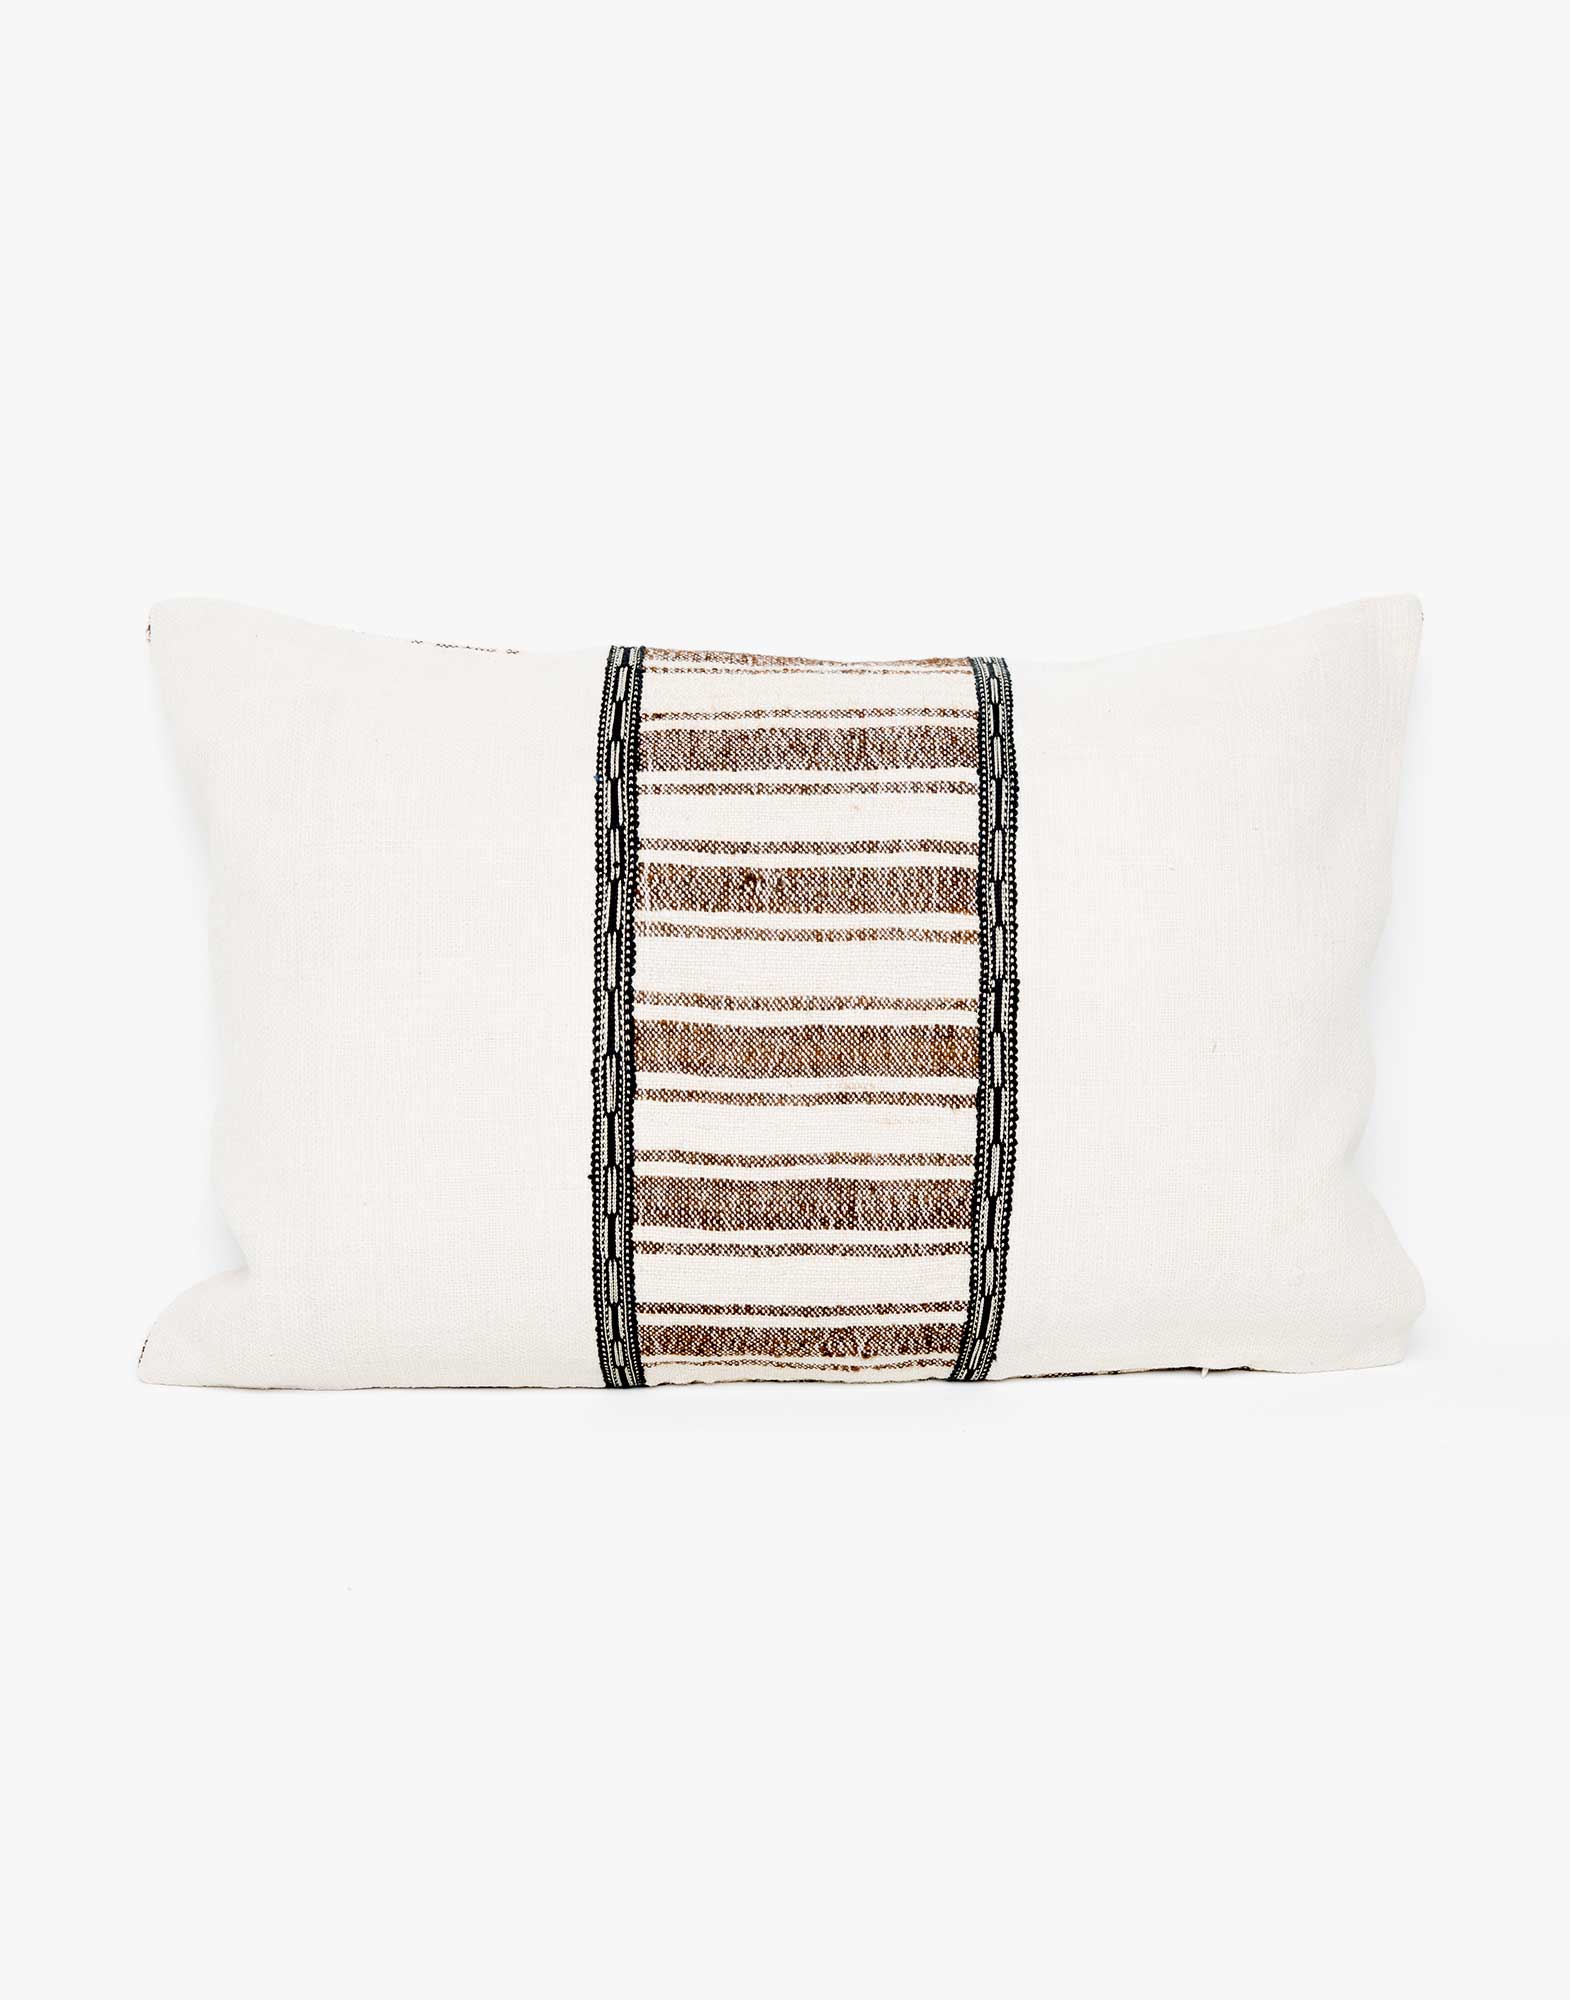 Handwoven Vintage Kilim Patchwork Pillow